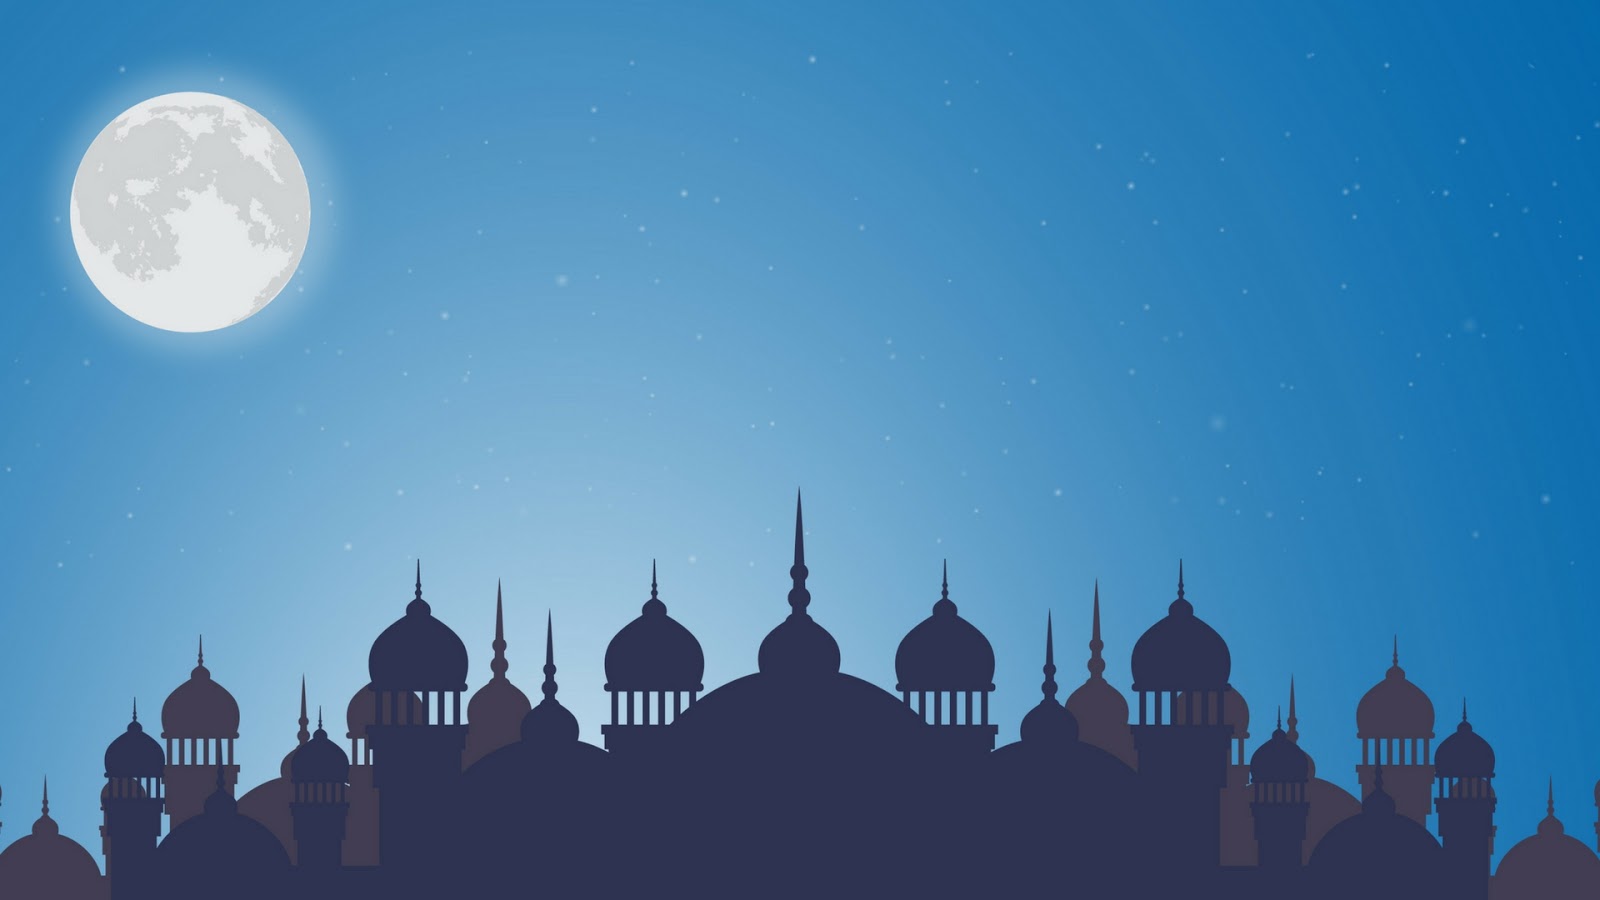 Kumpulan Kata Ucapan puasa Ramadhan 1440 H 2019/2020 